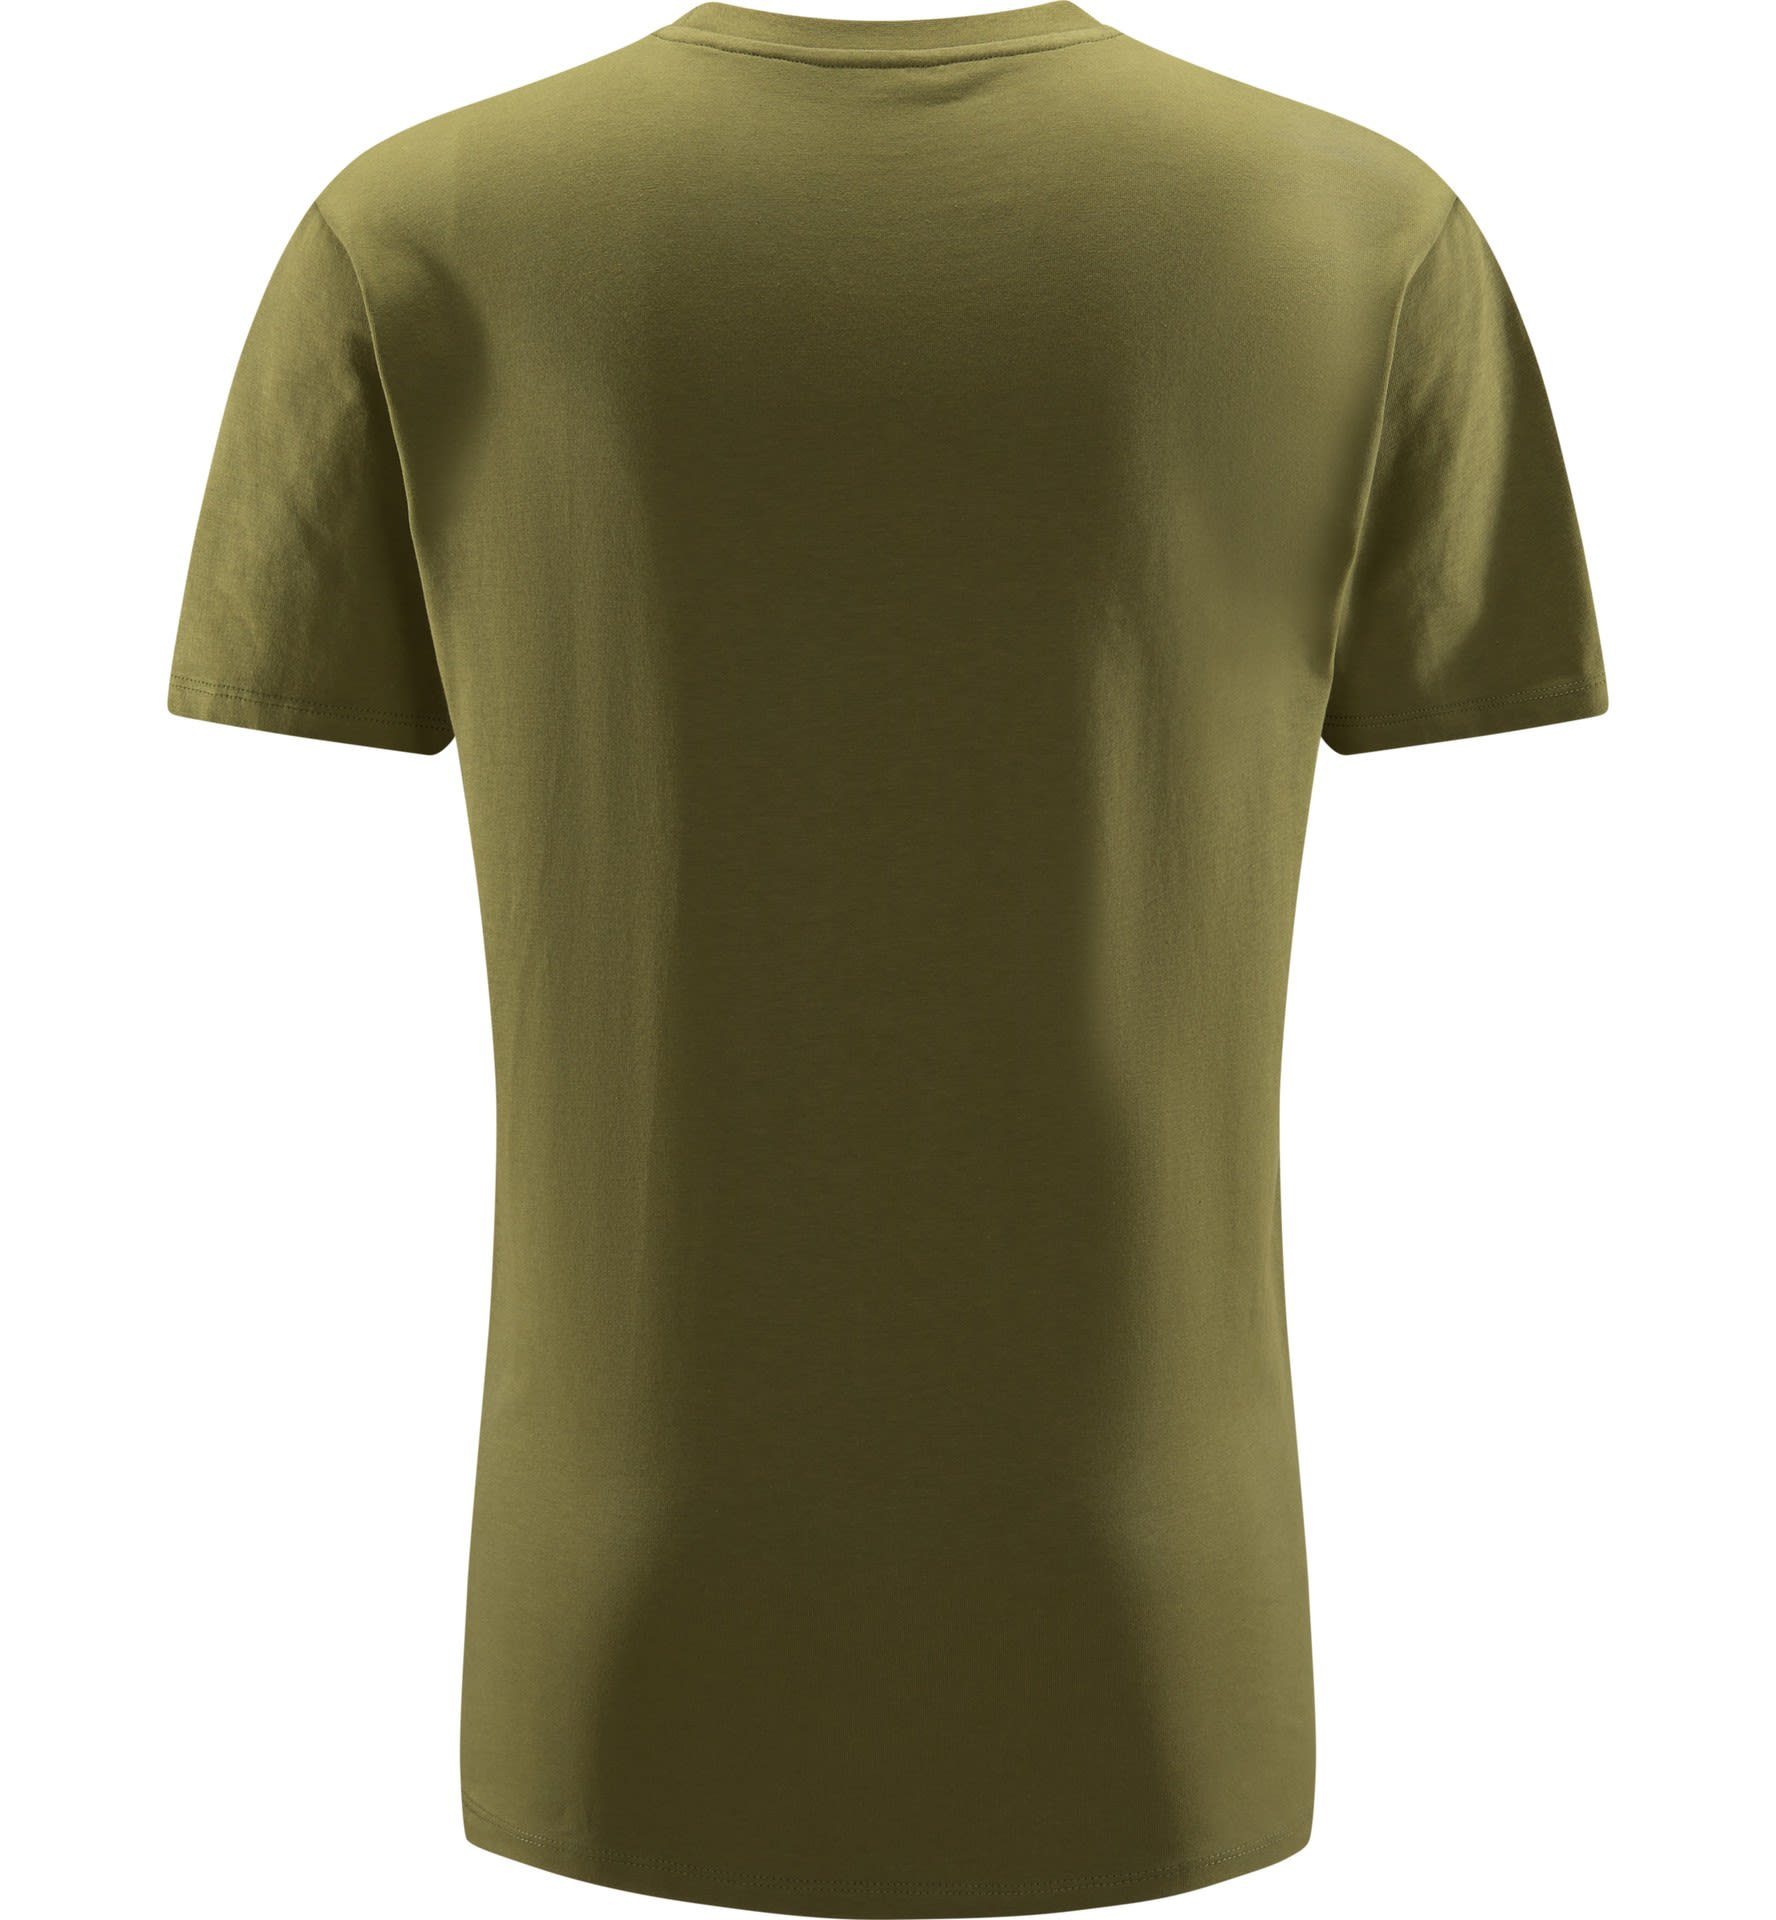 Herren T-Shirt Haglöfs Green Tee Green Camp Haglöfs M Kurzarm-Shirt